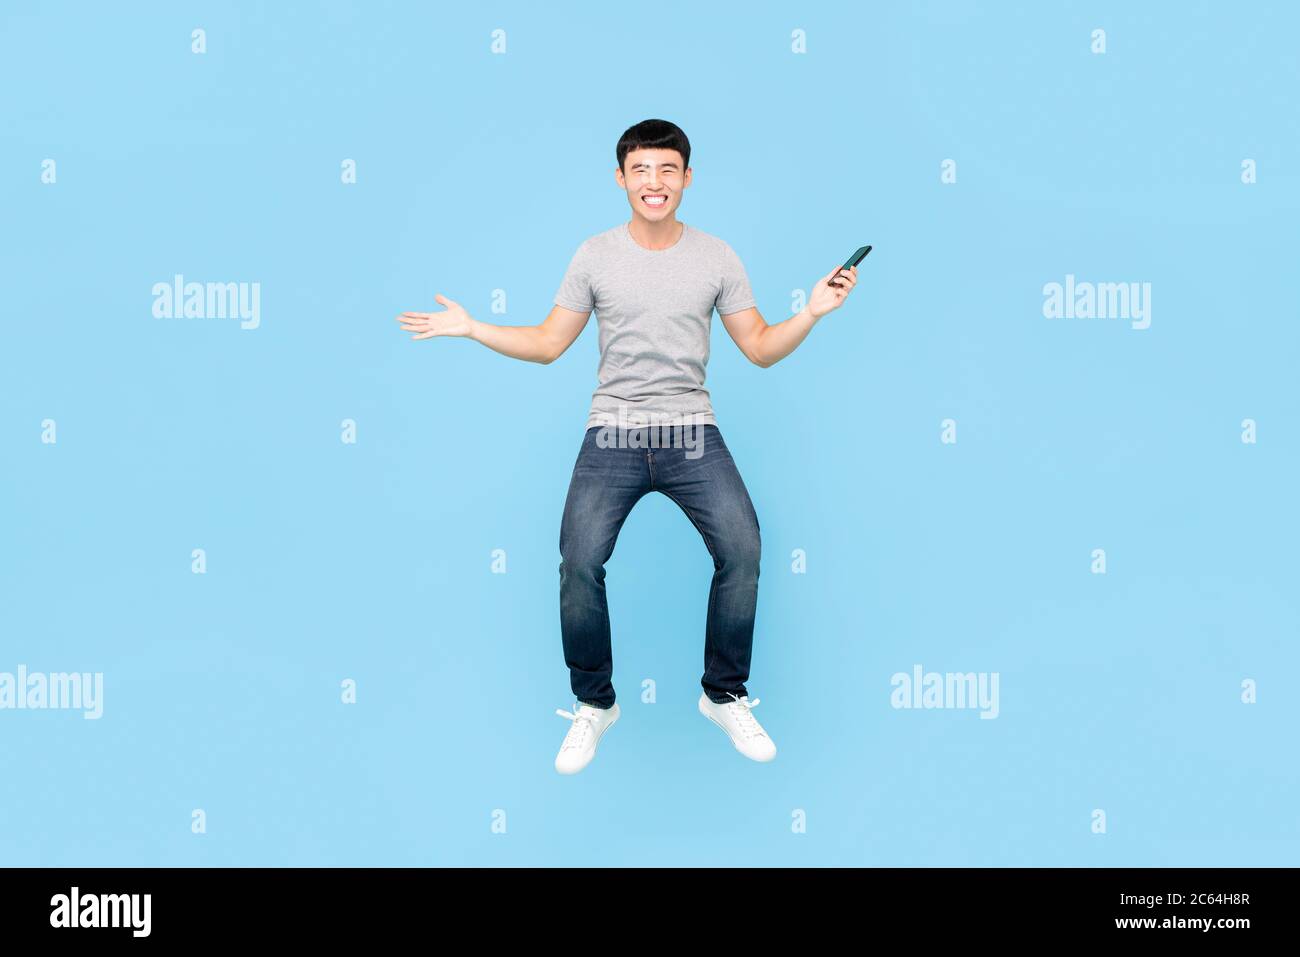 Divertente ritratto a tutta lunghezza di felice uomo asiatico sorridente saltando in aria media mentre si tiene smartphone in uno sfondo blu studio isolato Foto Stock